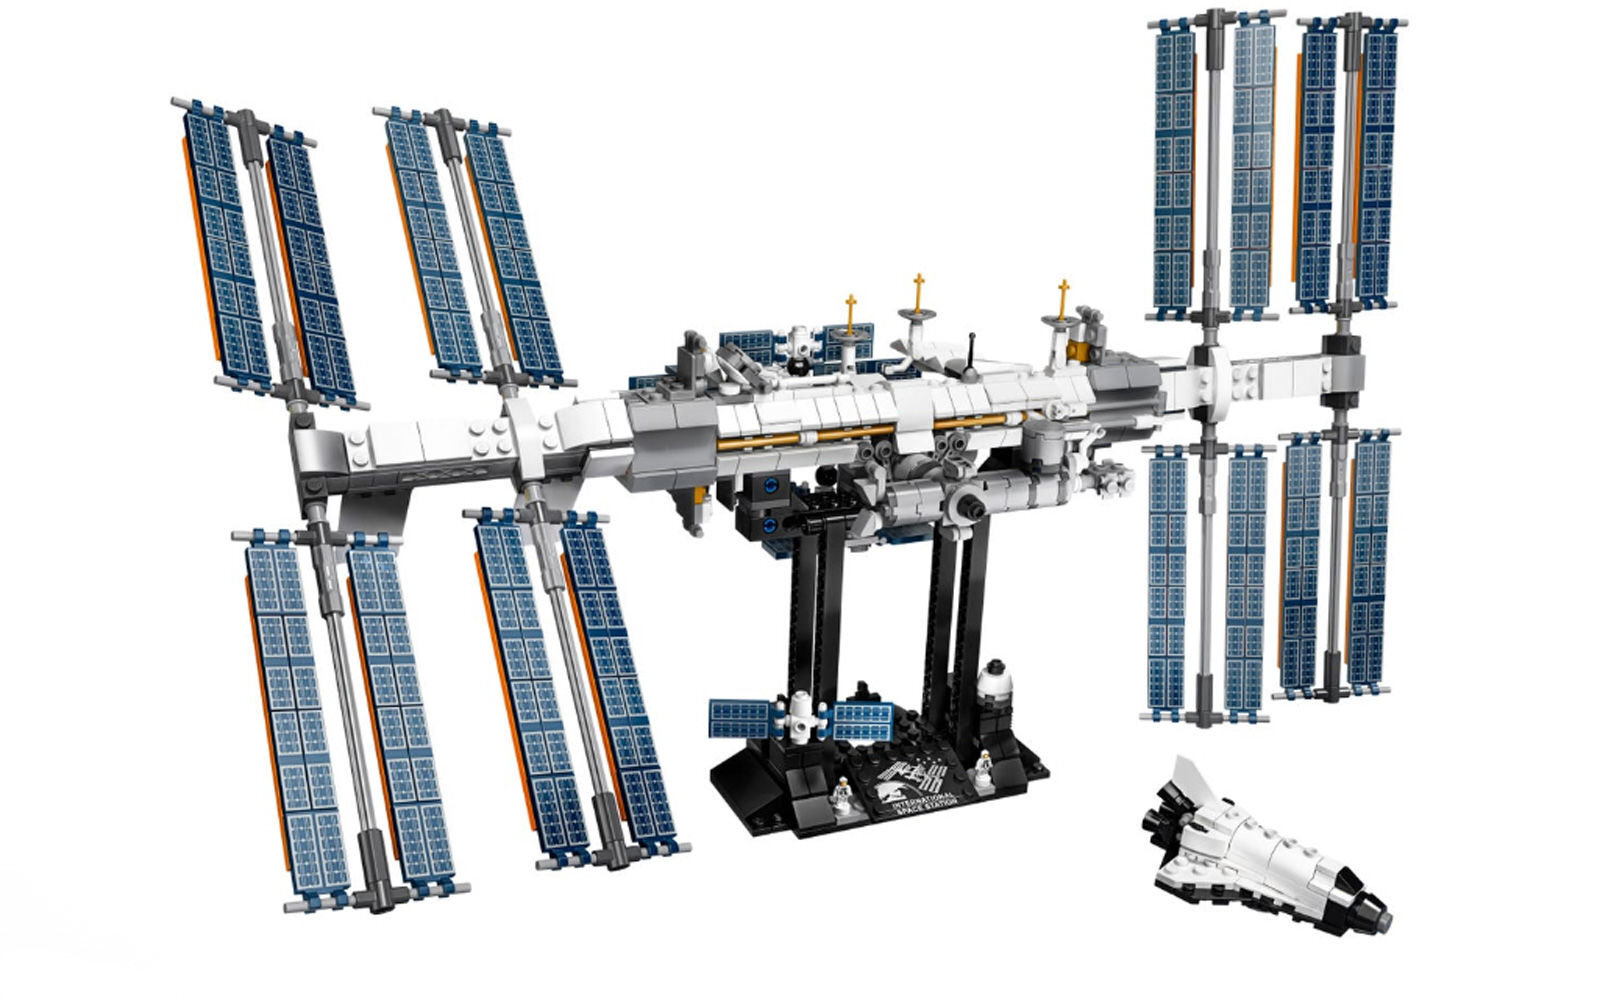 Σύντομα θα είναι διαθέσιμη η έκδοση LEGO του Διεθνούς Διαστημικού Σταθμού